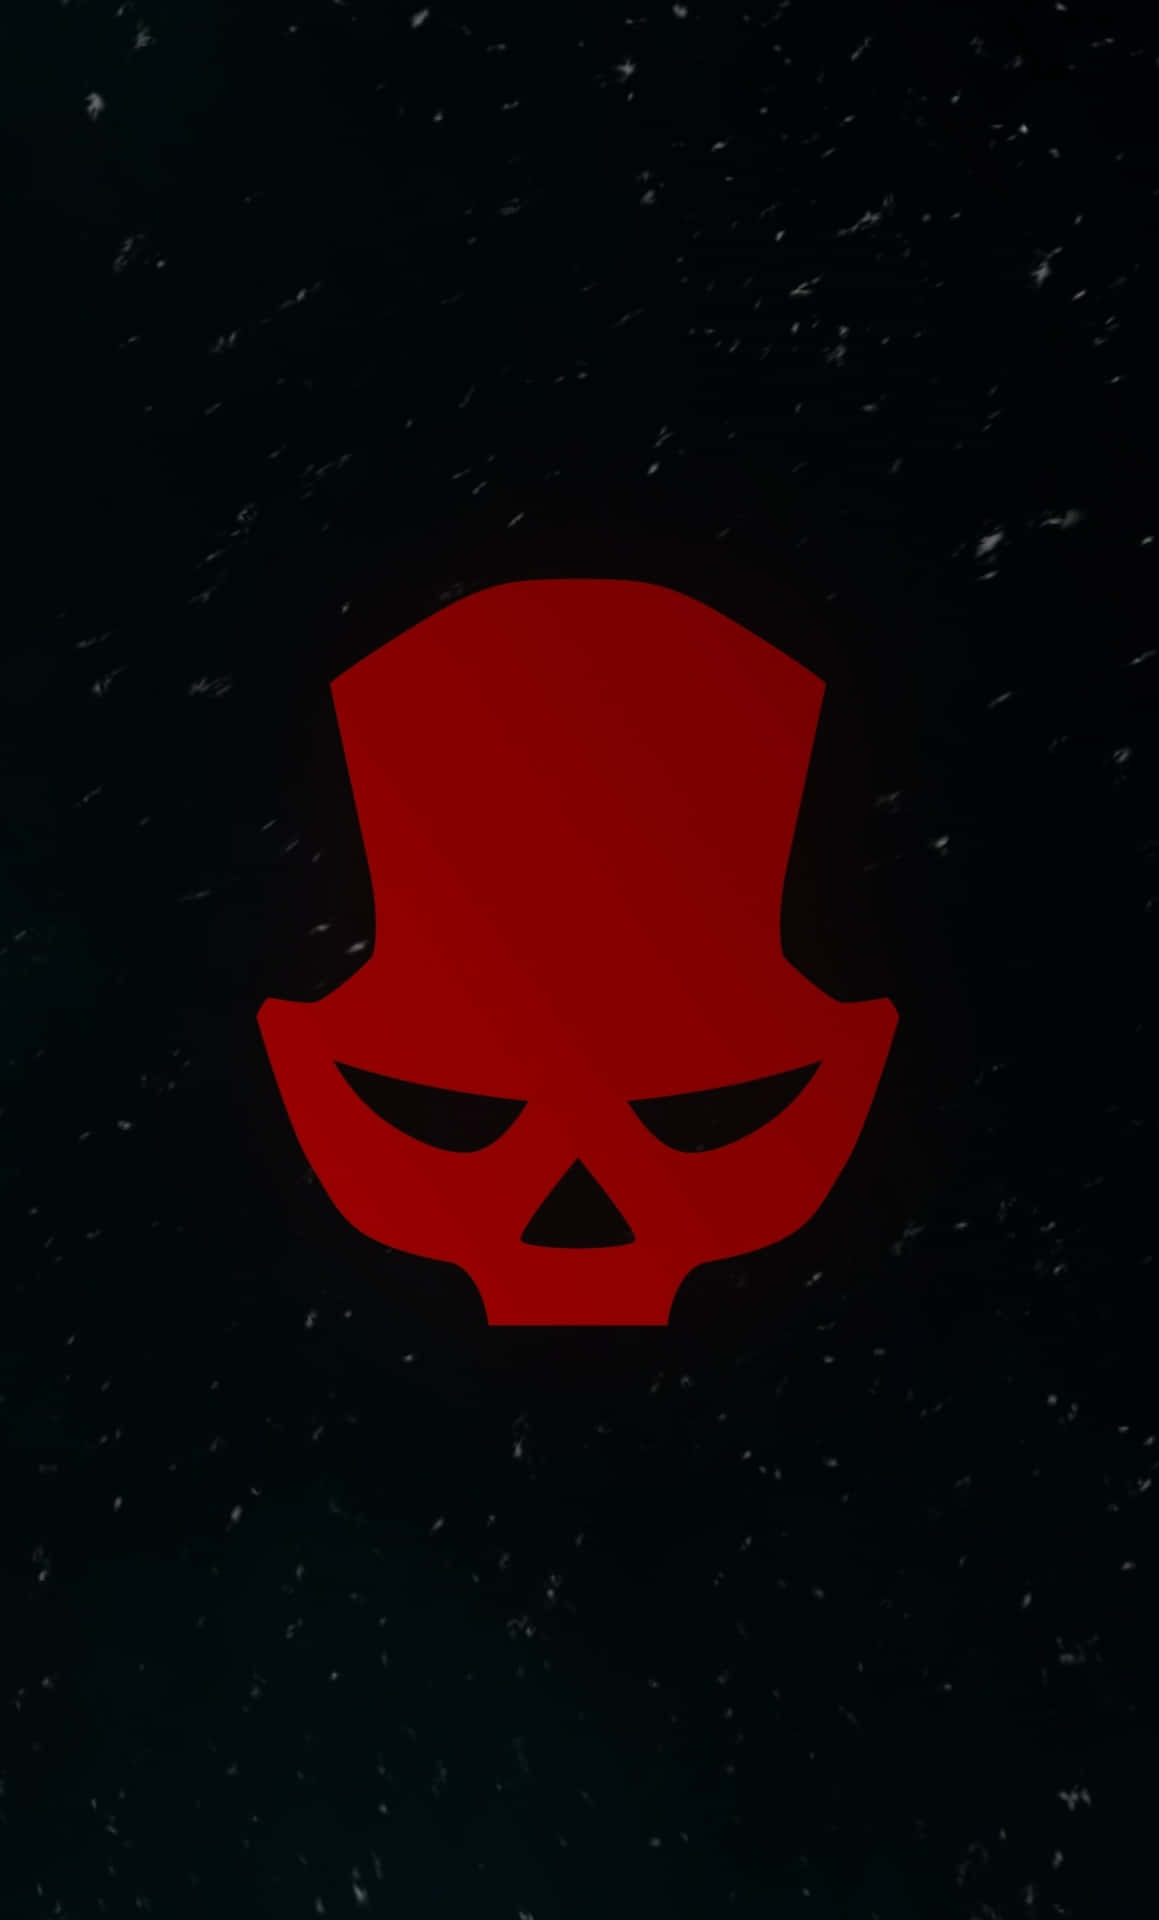 Fondode Pantalla De Red Skull Del Juego The Division Para Android.